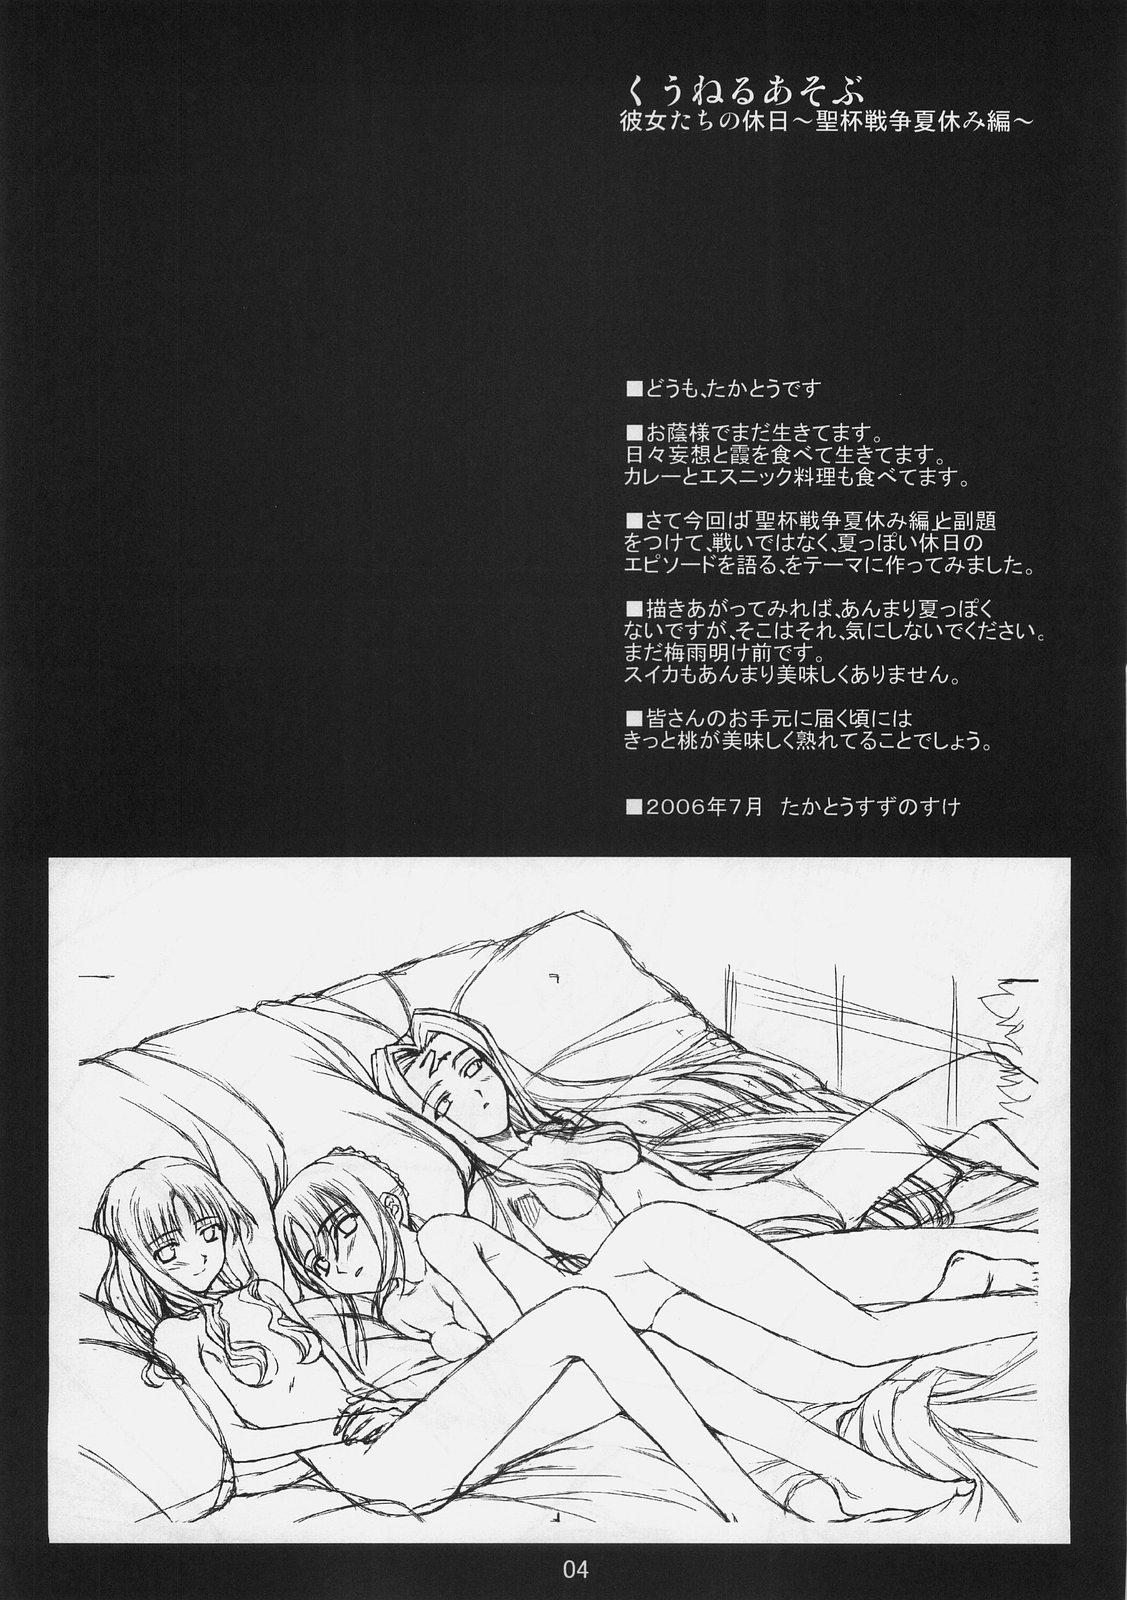 Chichona Kuuneru Asobu - Fate stay night Buttfucking - Page 4